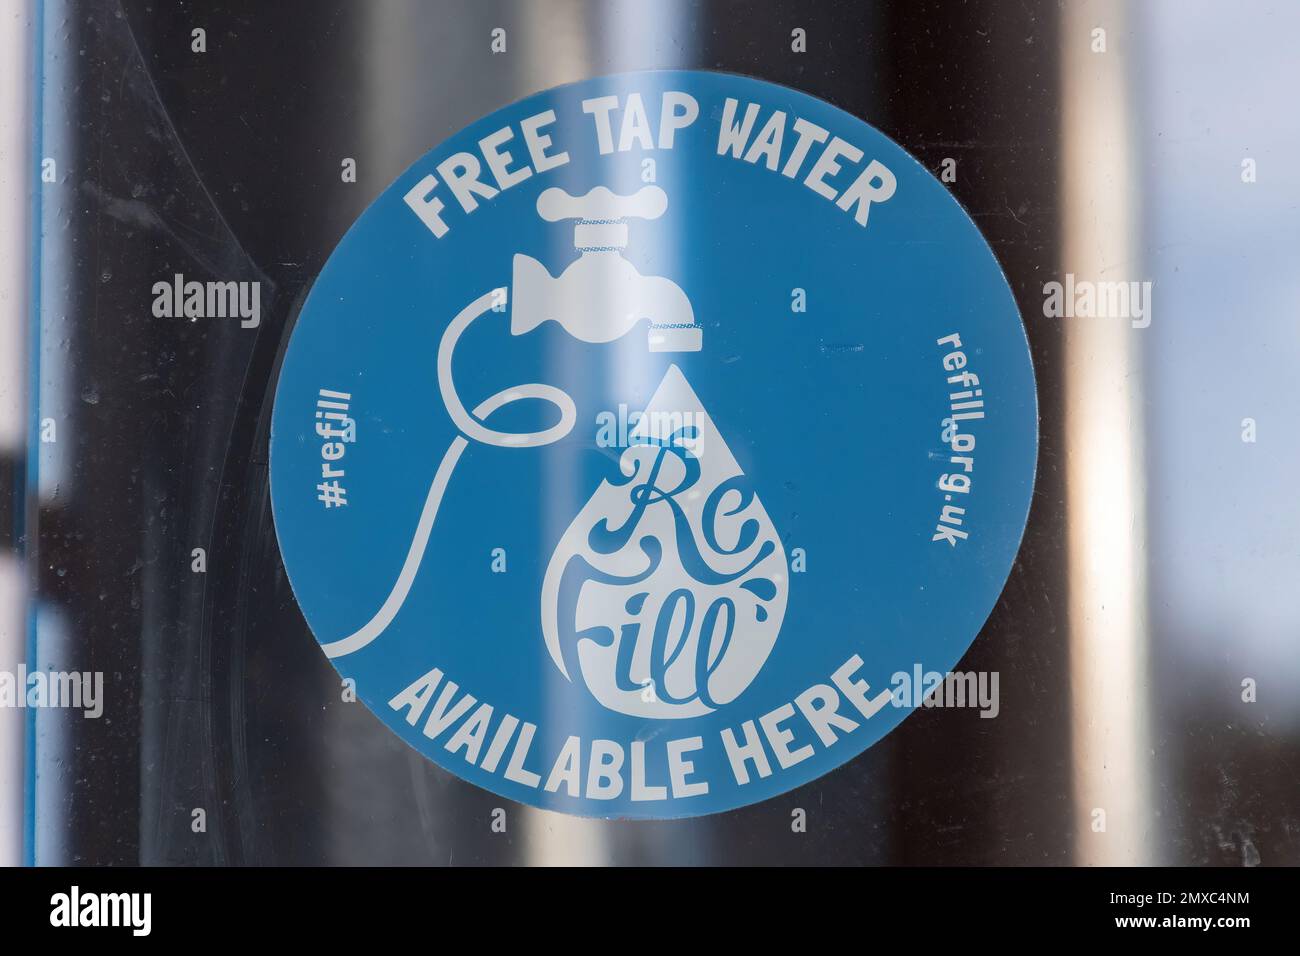 Acqua del rubinetto gratuita disponibile qui, refill.org.uk adesivo nella finestra del caffè, Inghilterra, Regno Unito. Per riempire le bottiglie d'acqua e ridurre l'uso di plastica monouso Foto Stock